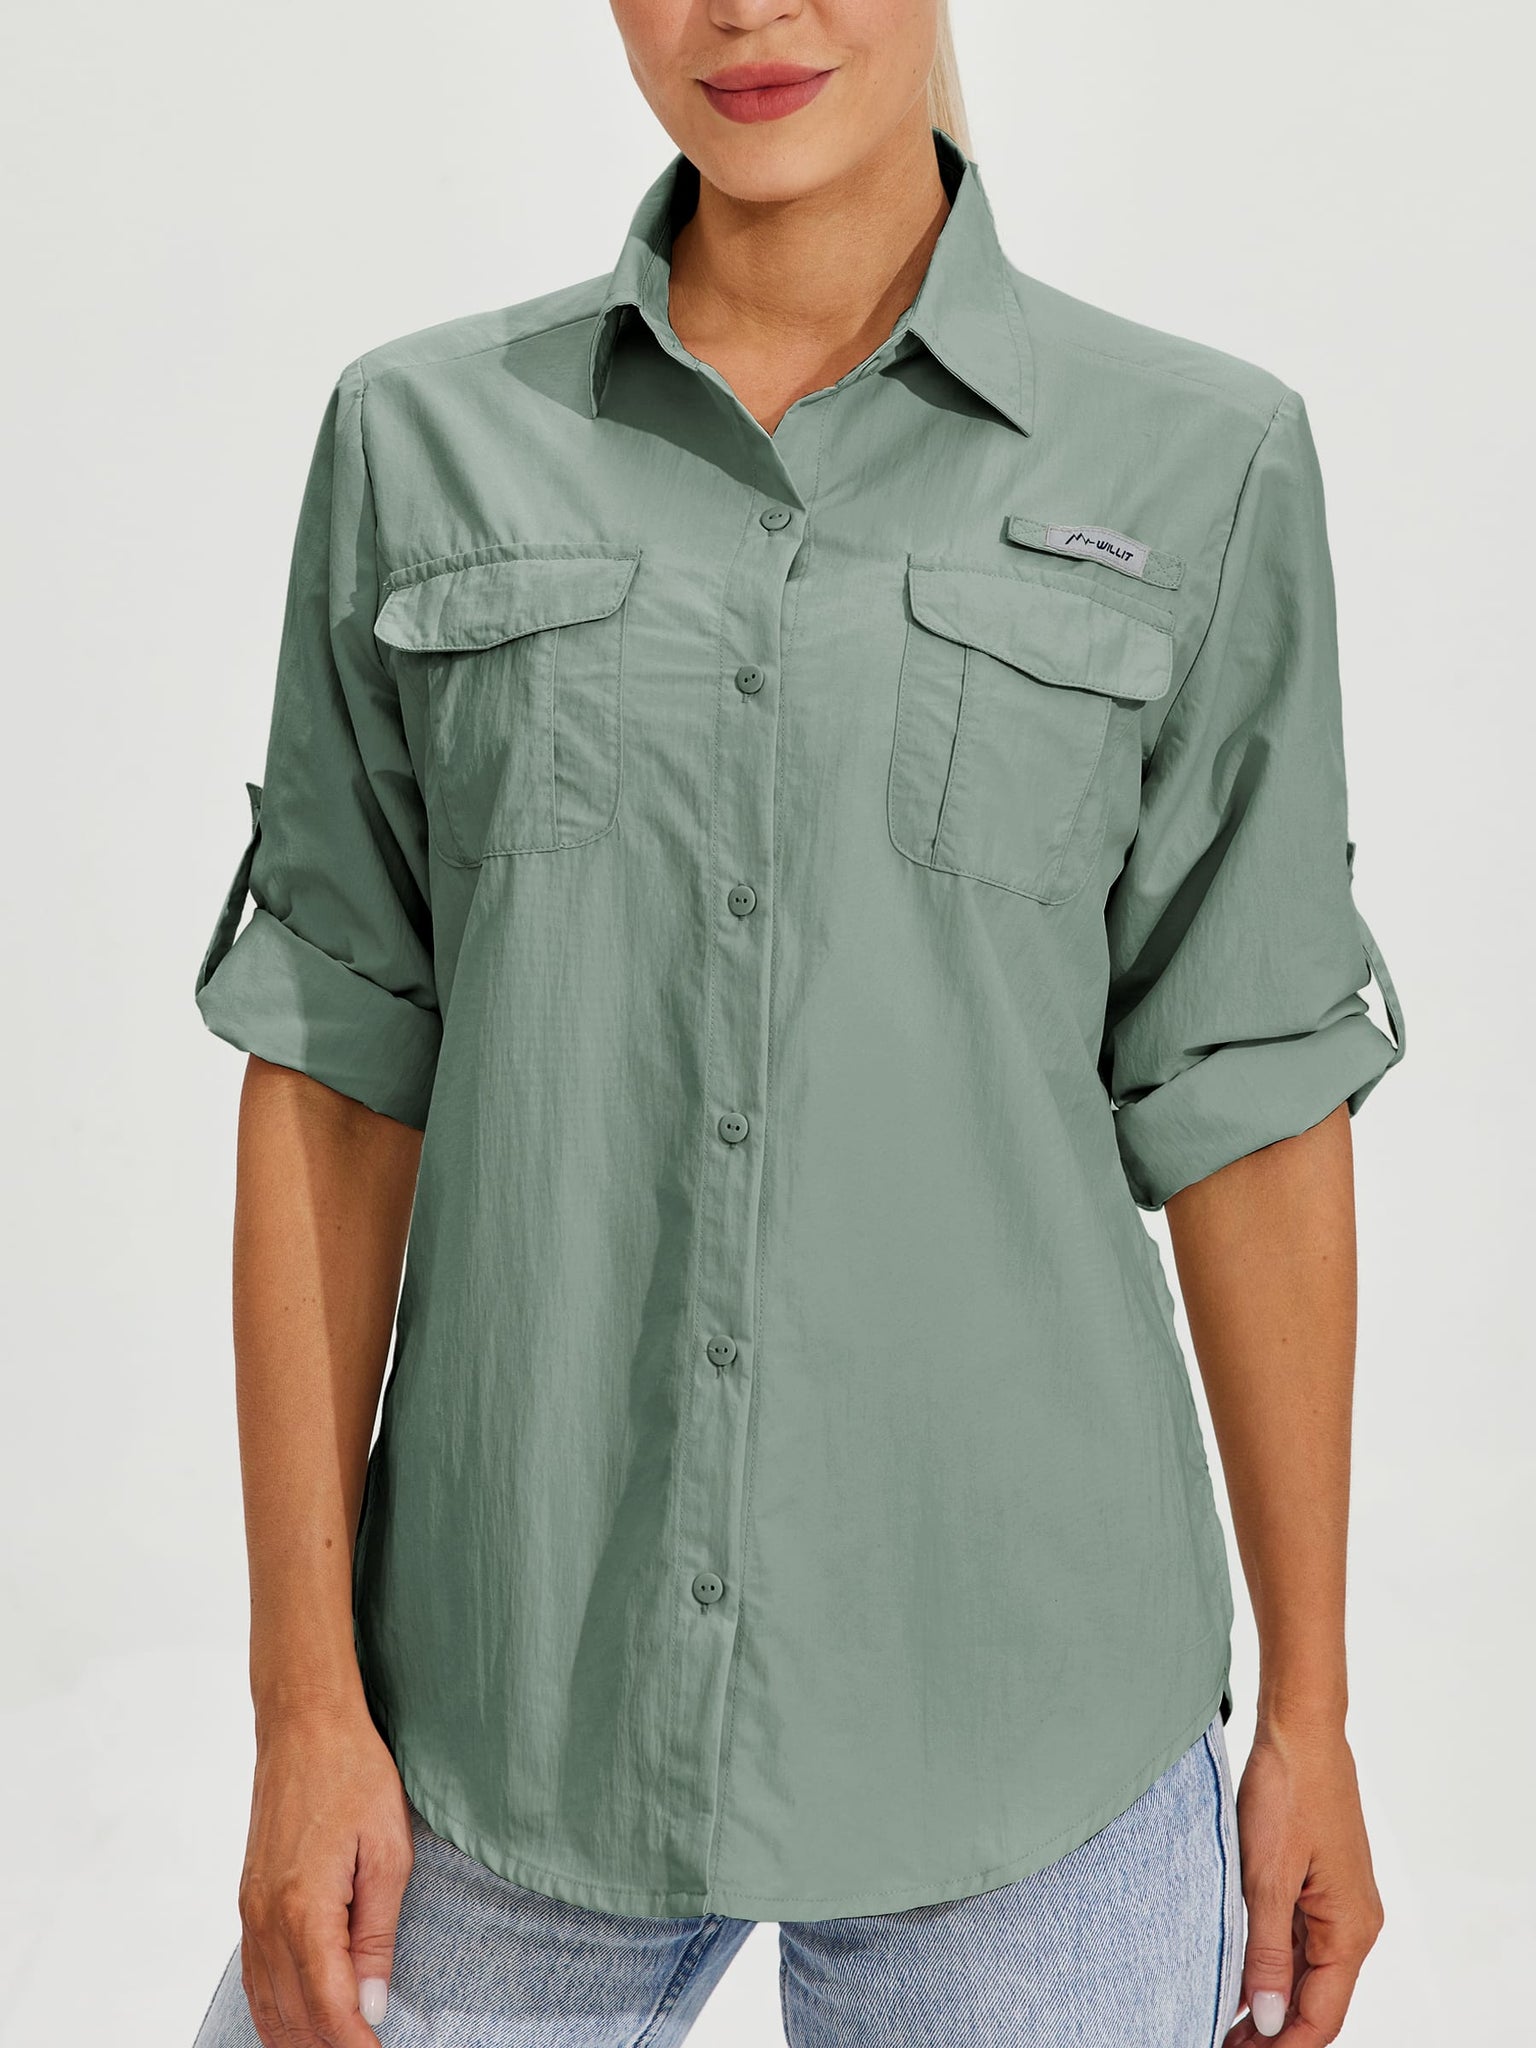 Women's Long Sleeve Fishing Shirt_Green_model3